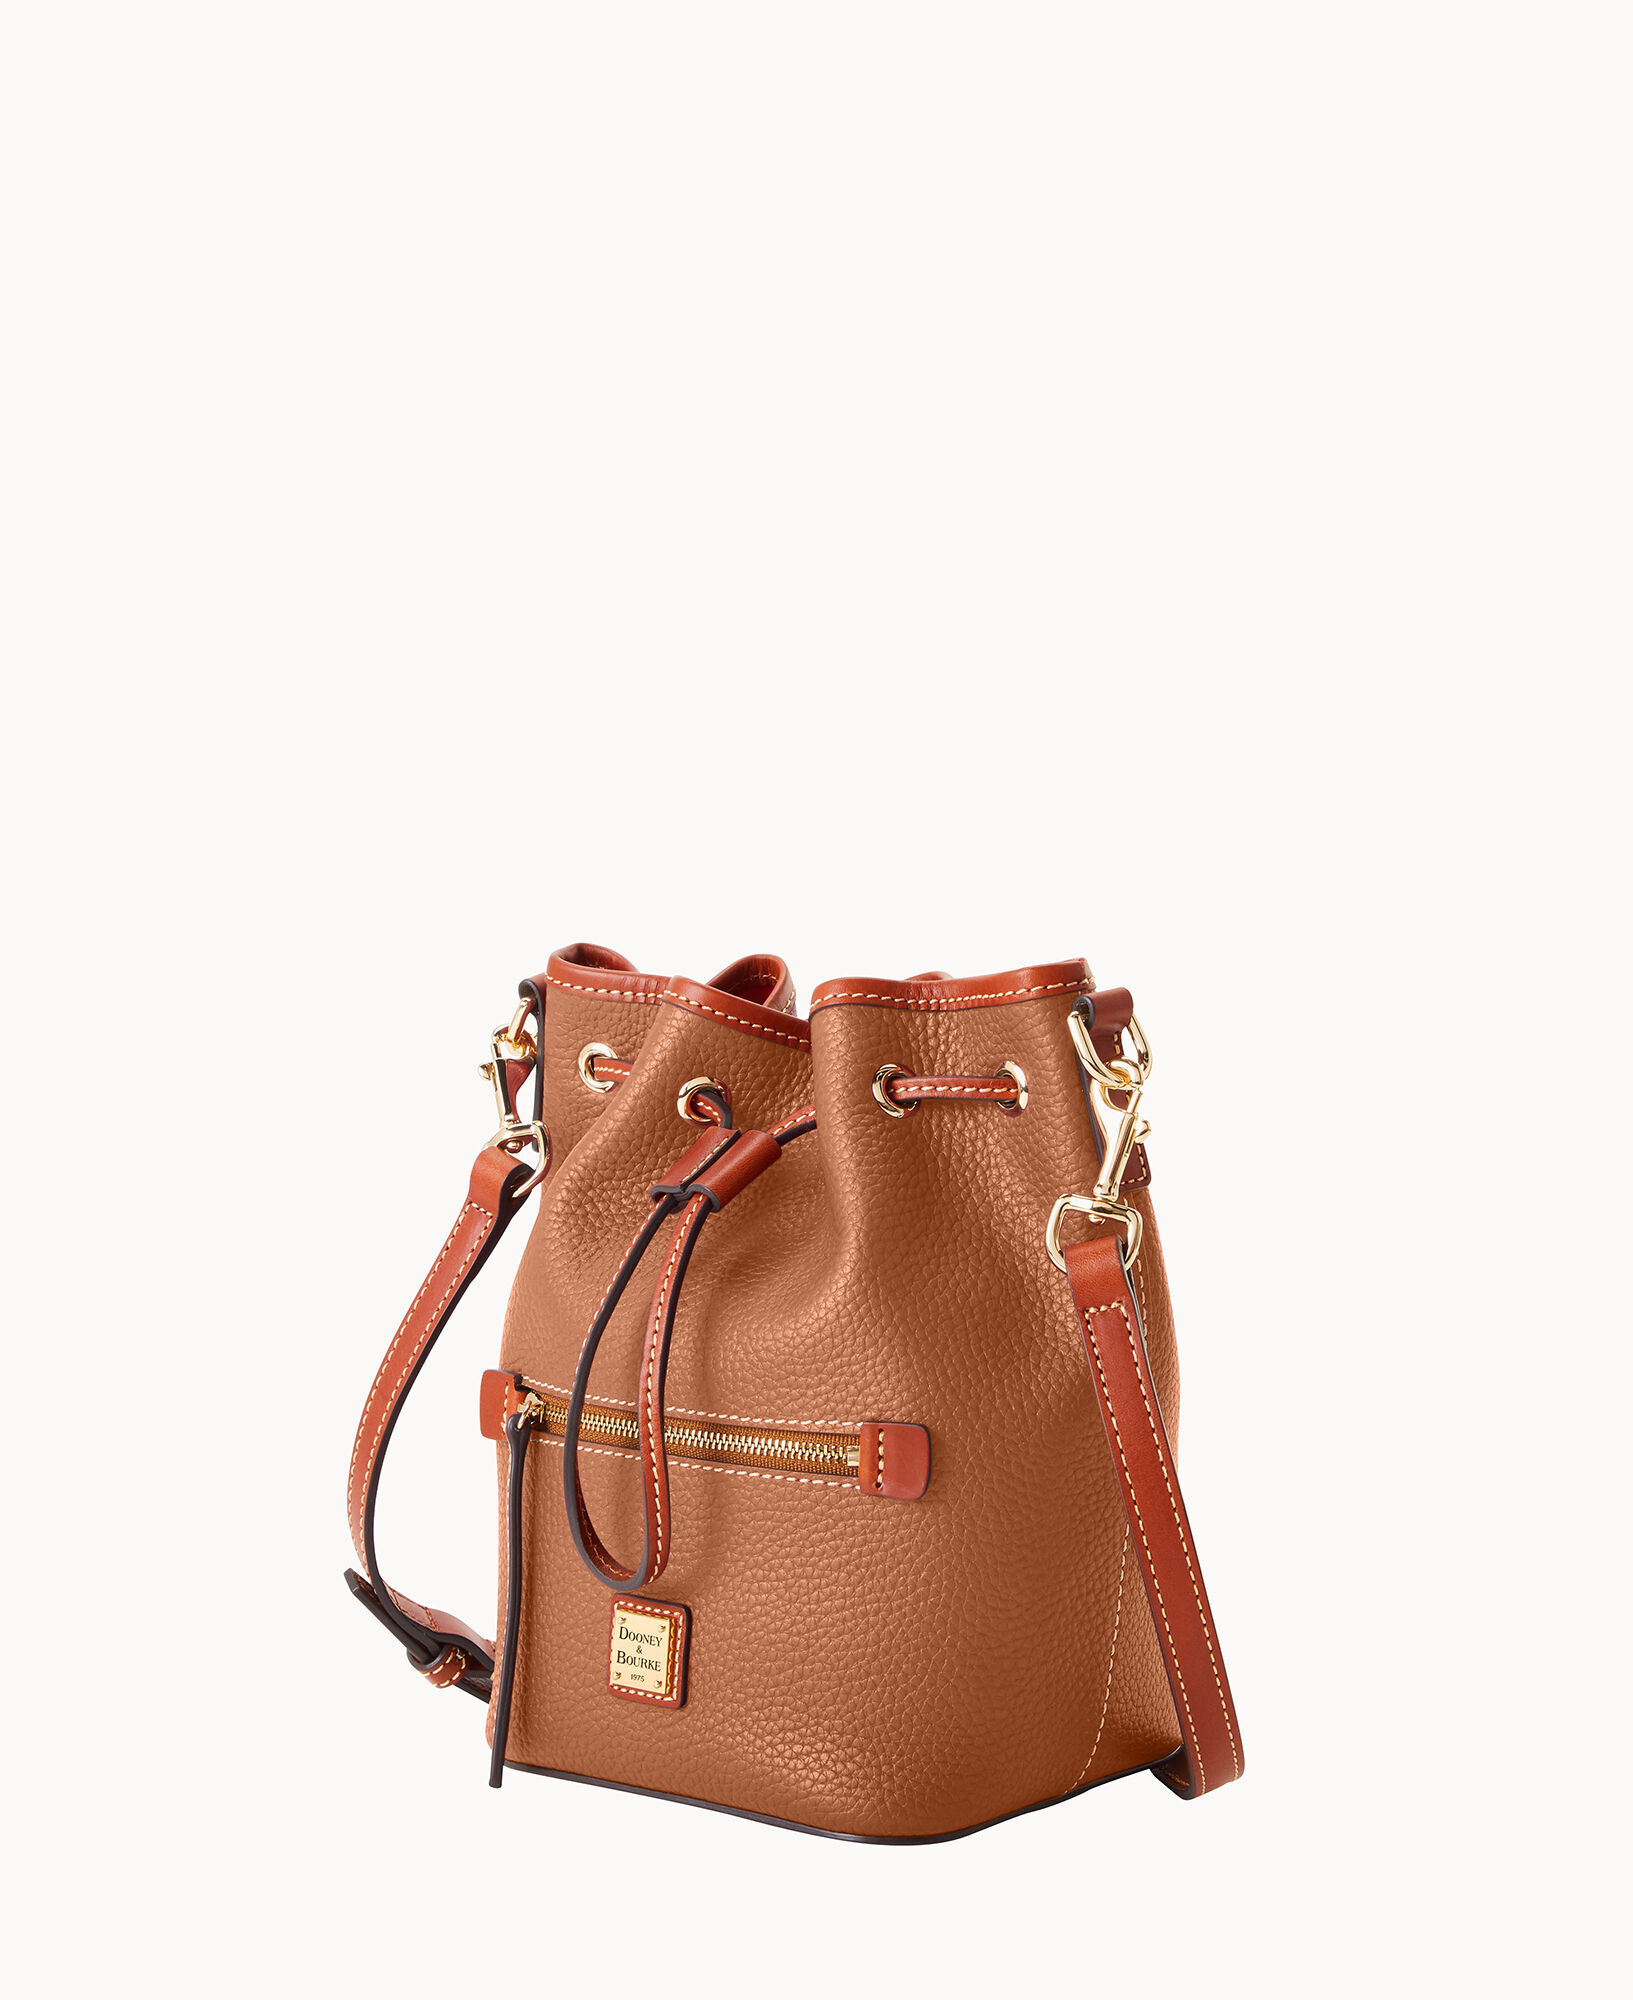 Dooney & Bourke Florentine Small Drawstring Shoulder Bag